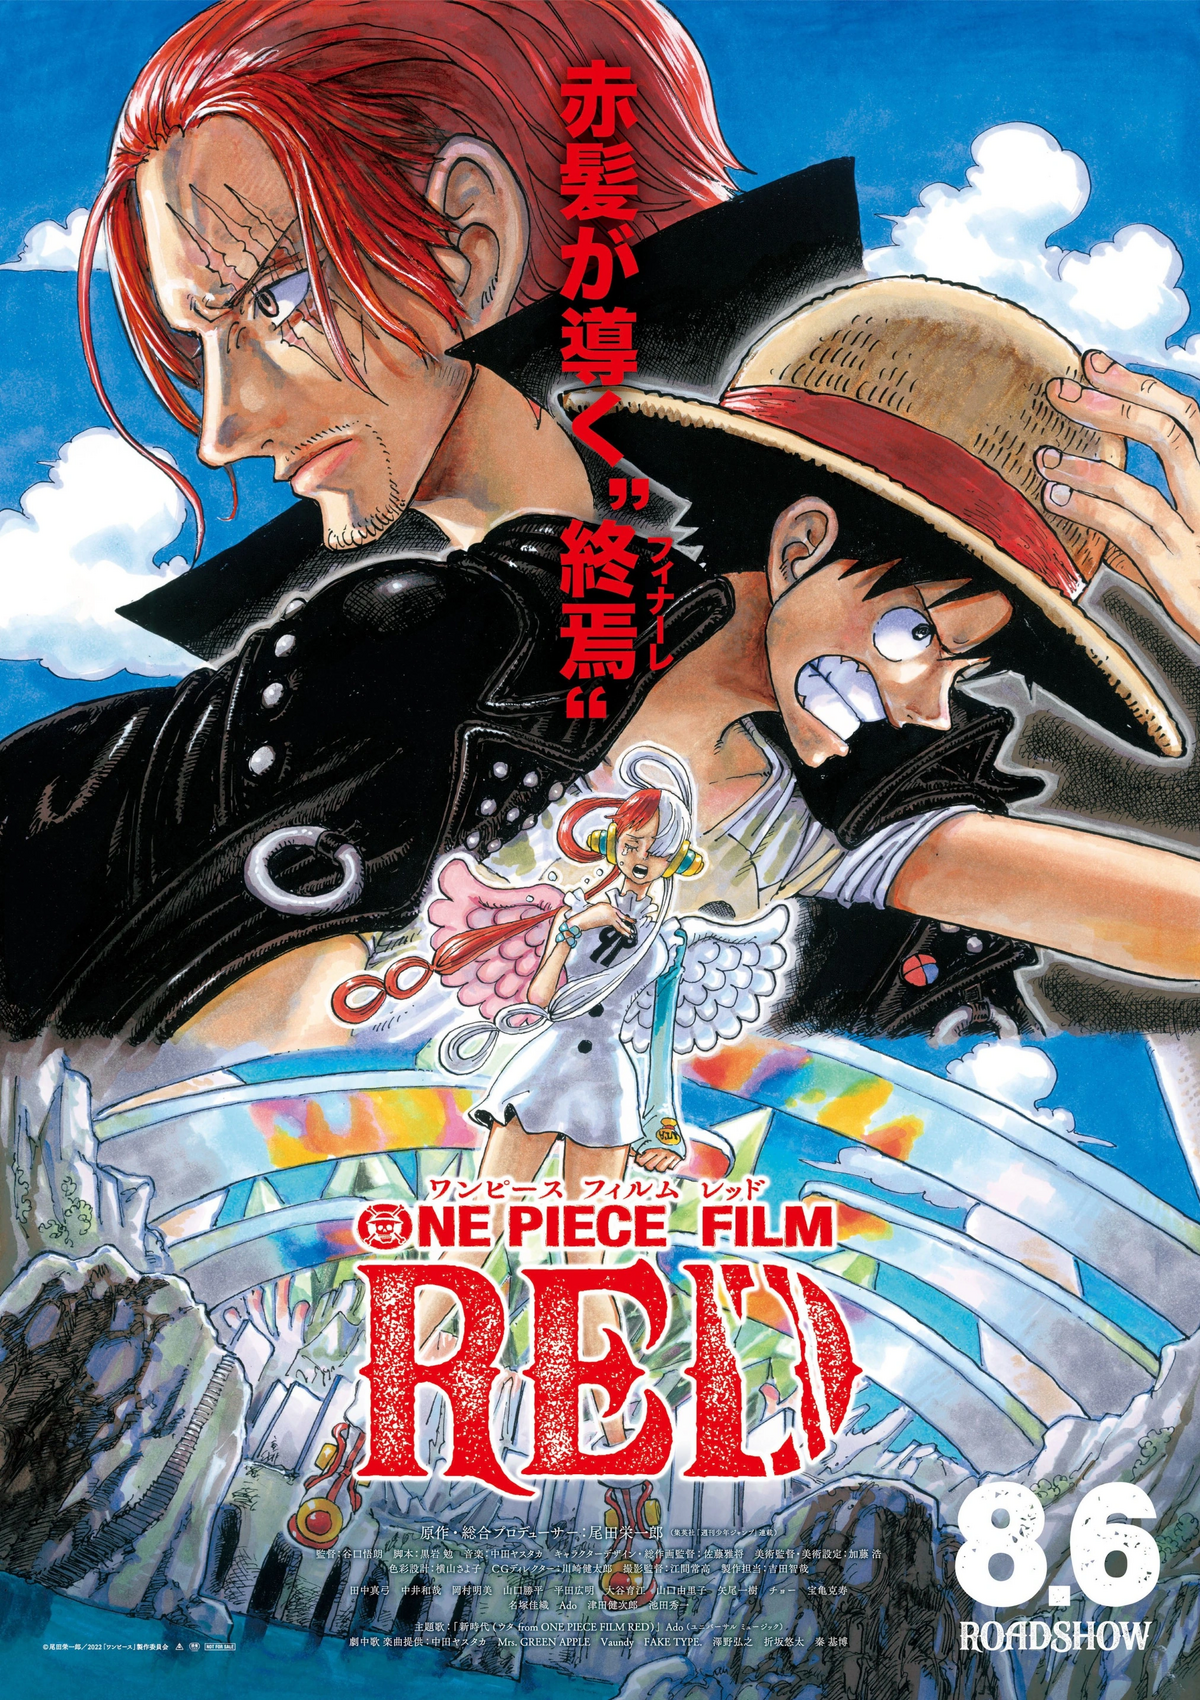 One Piece: Stampede é já o filme anime de One Piece mais lucrativo